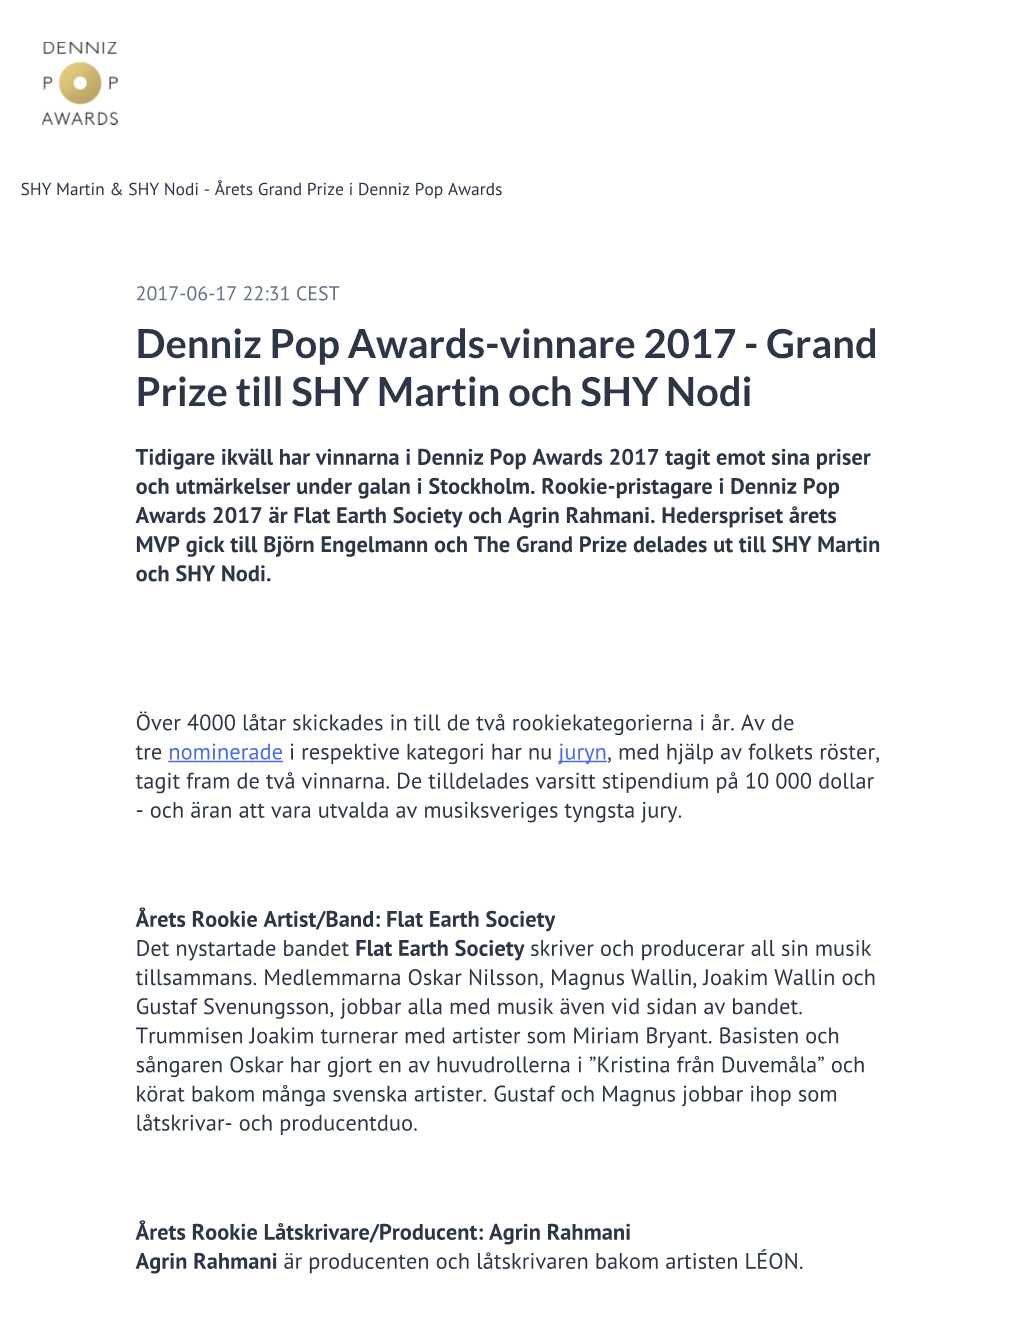 Denniz Pop Awards-Vinnare 2017 - Grand Prize Till SHY Martin Och SHY Nodi